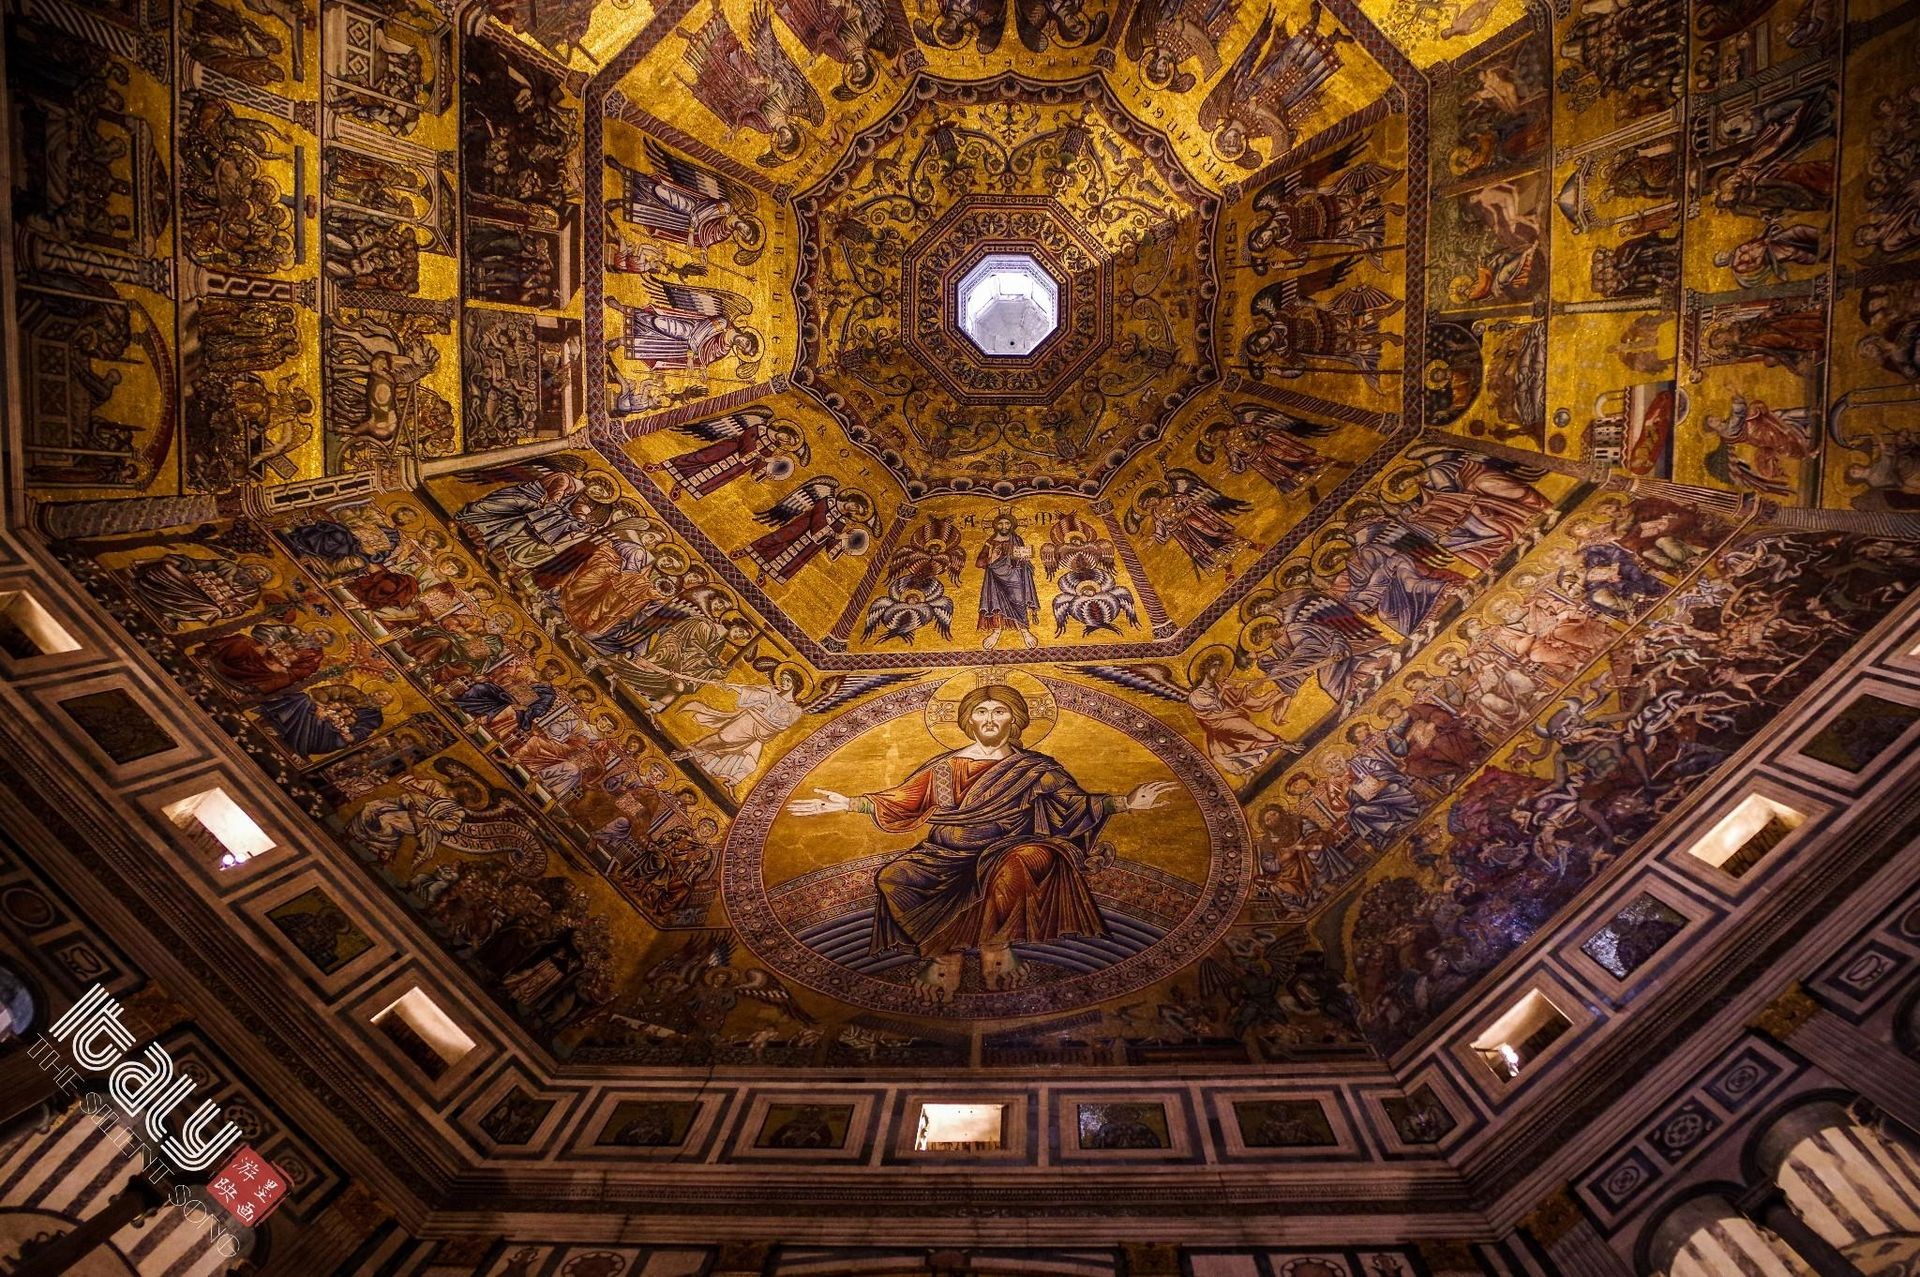 乔托钟楼(Giotto's Campanile)